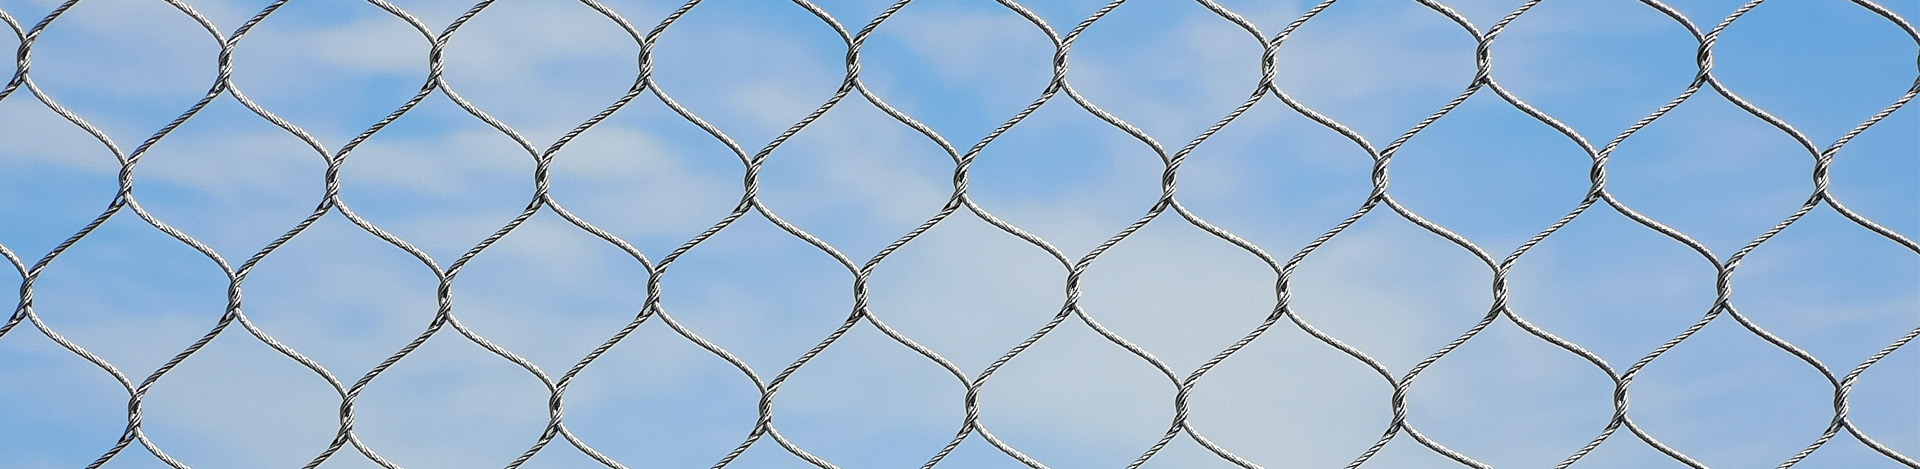 动物围栏网、不锈钢绳网.jpg